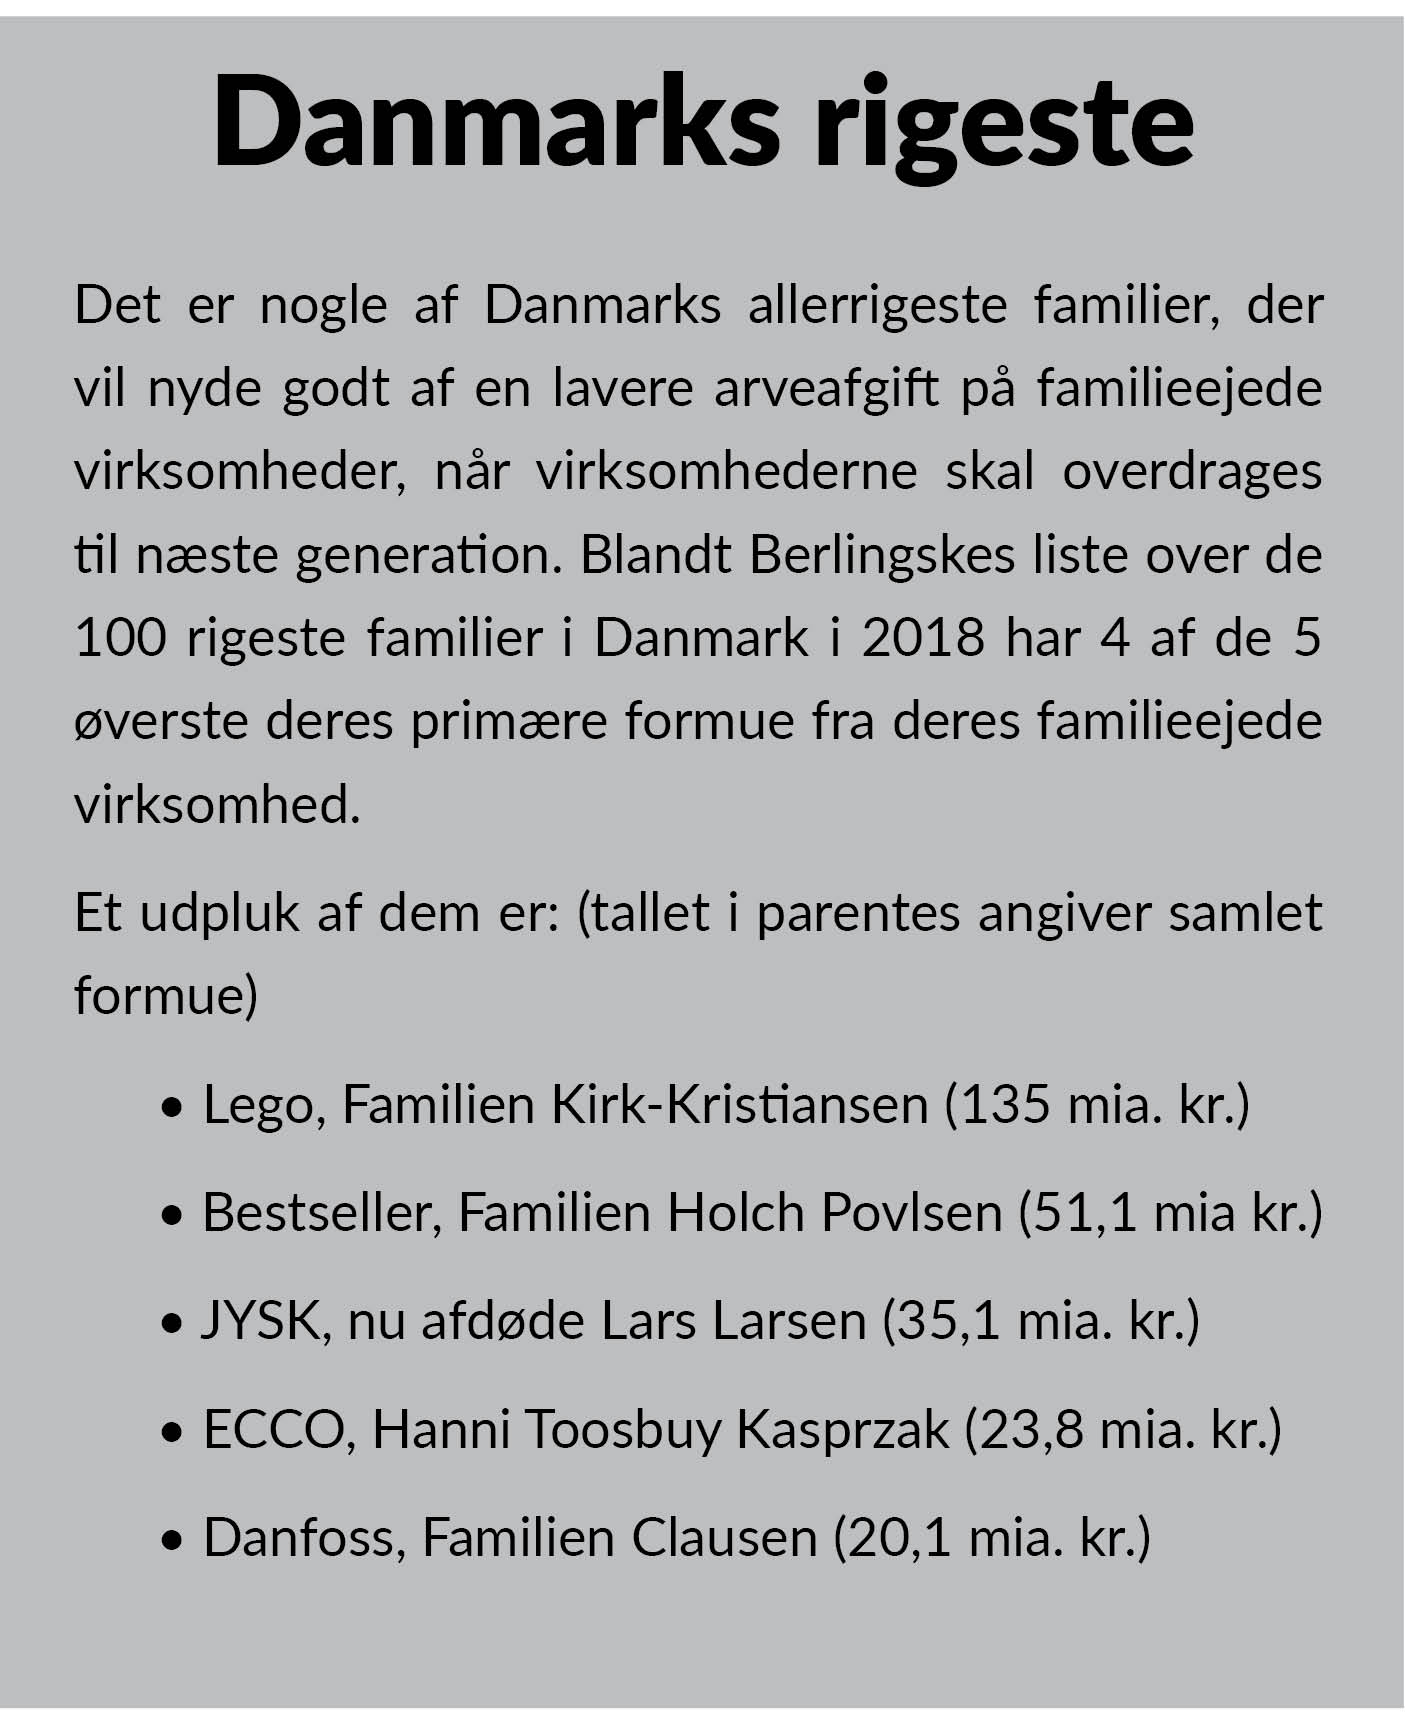 Danmarks rigeste faktaboks